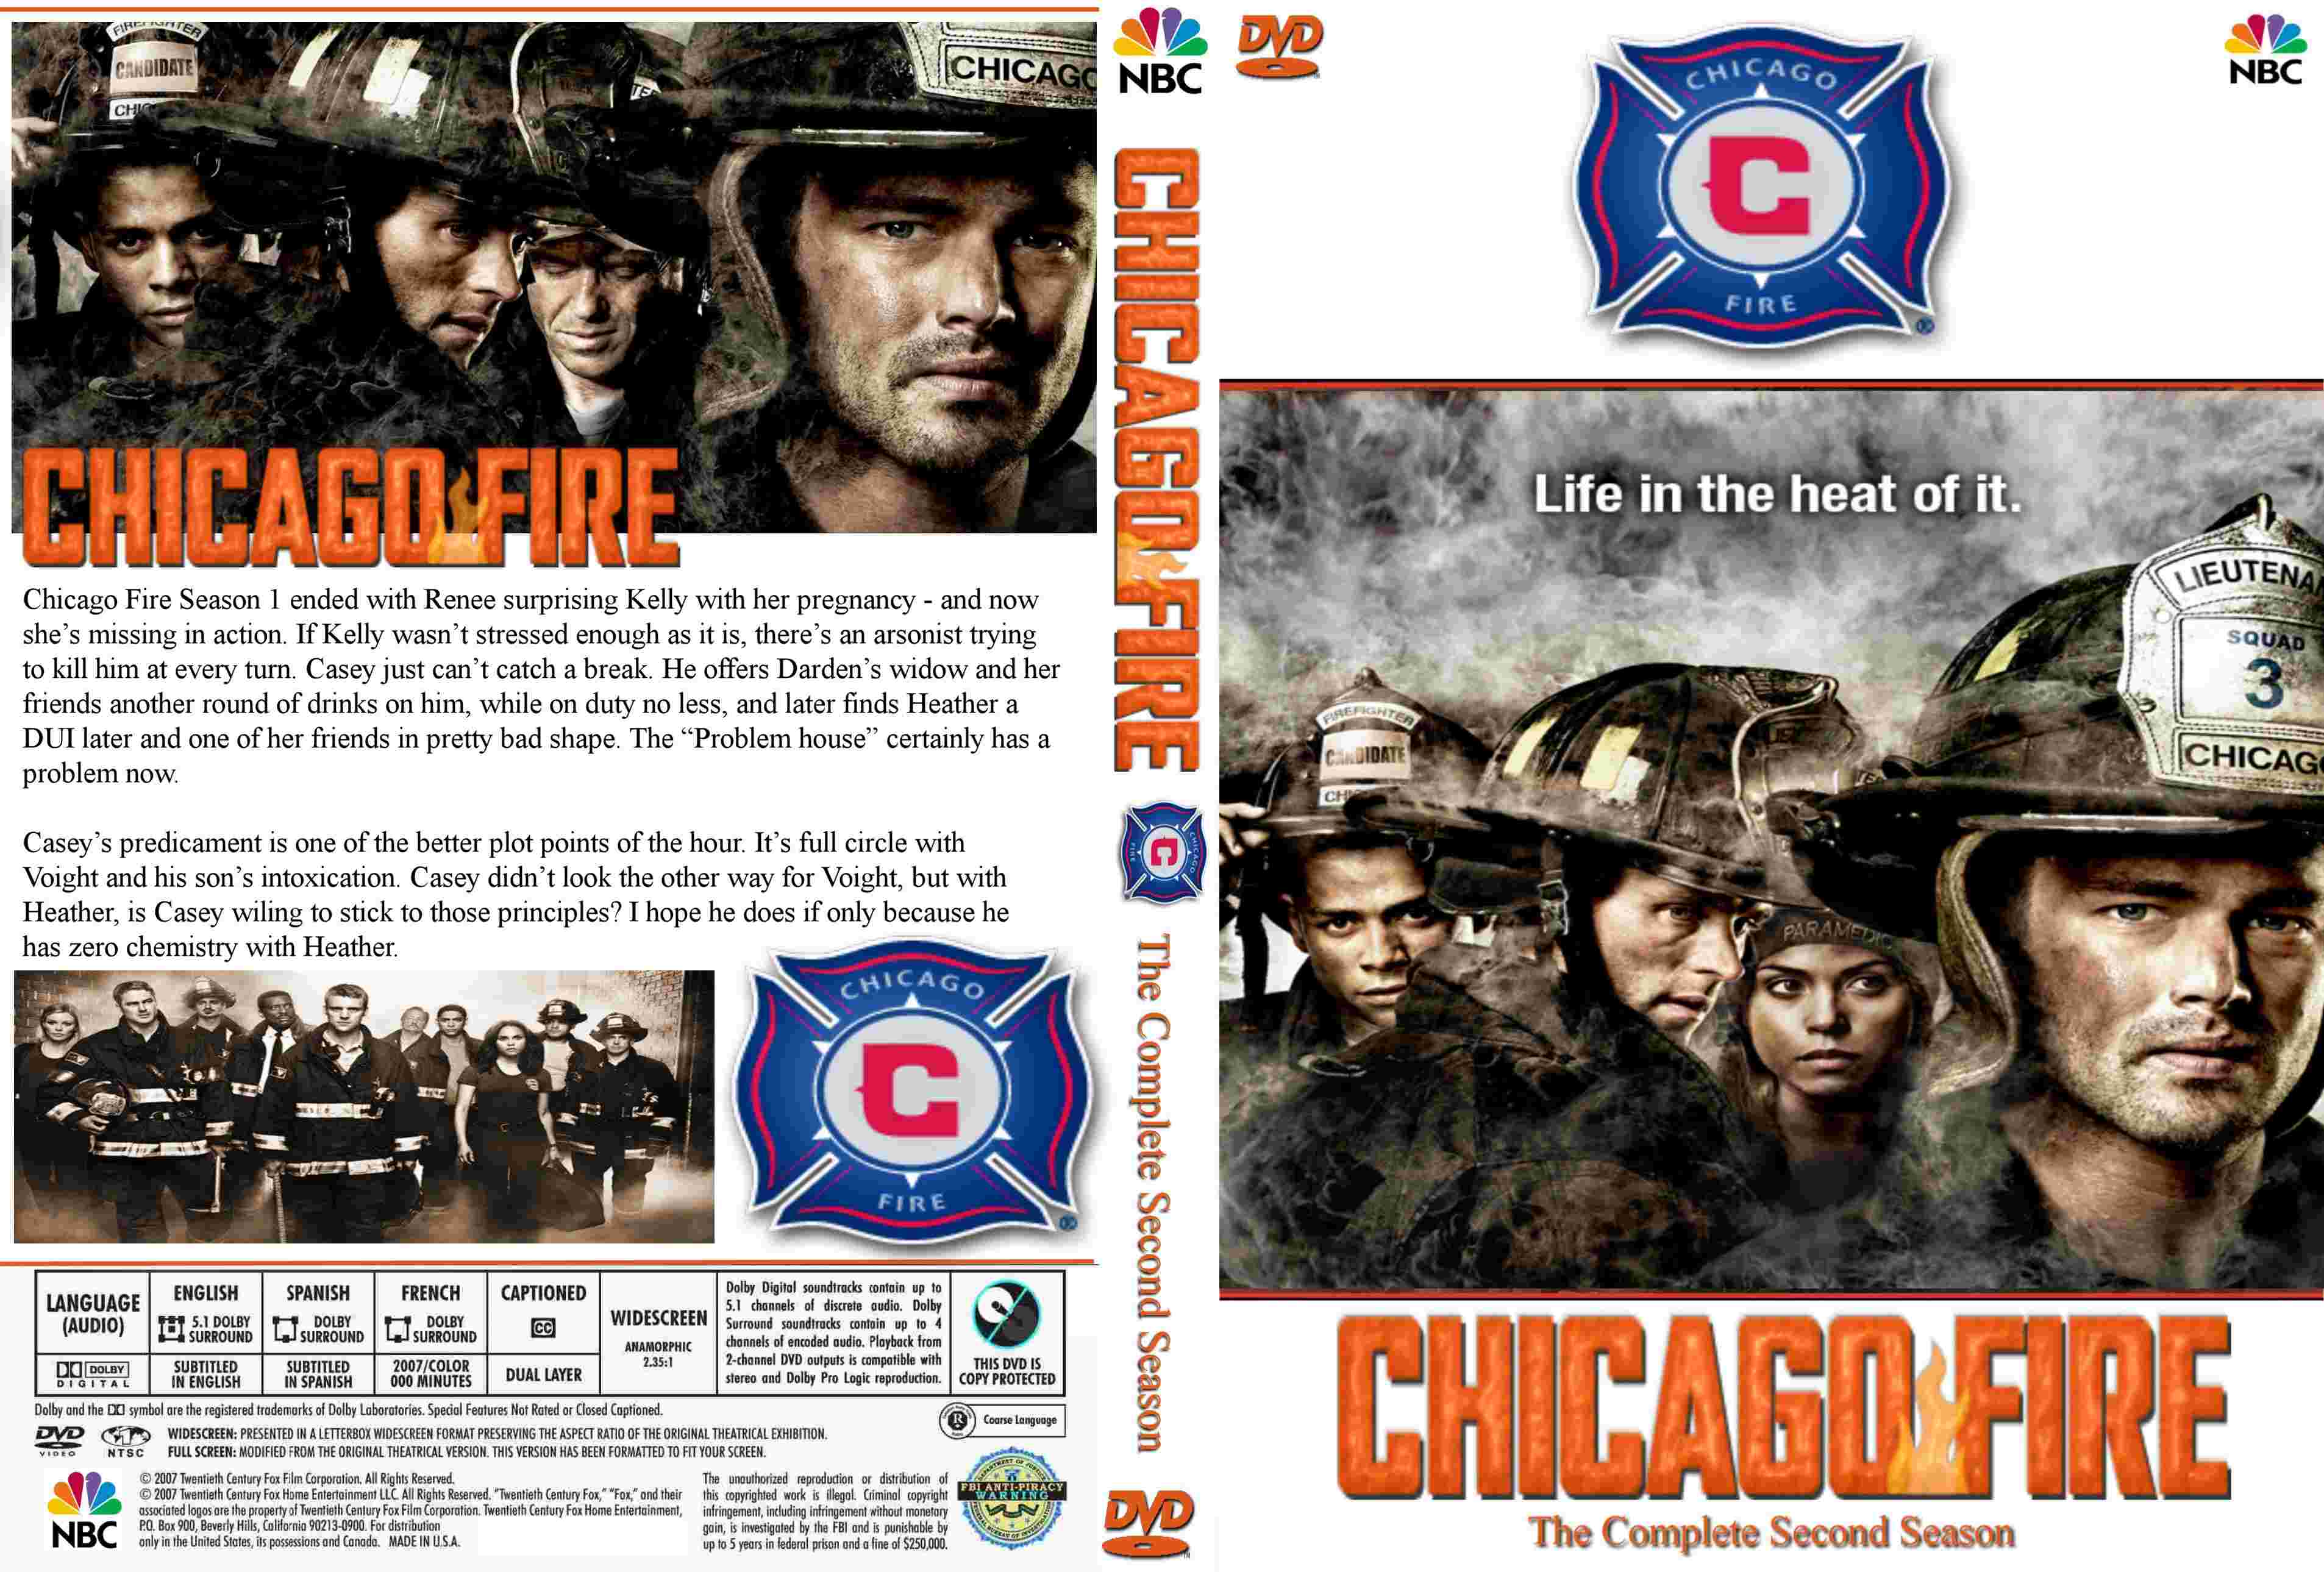 Jaquette DVD Chicago fire saison 2 zone 1